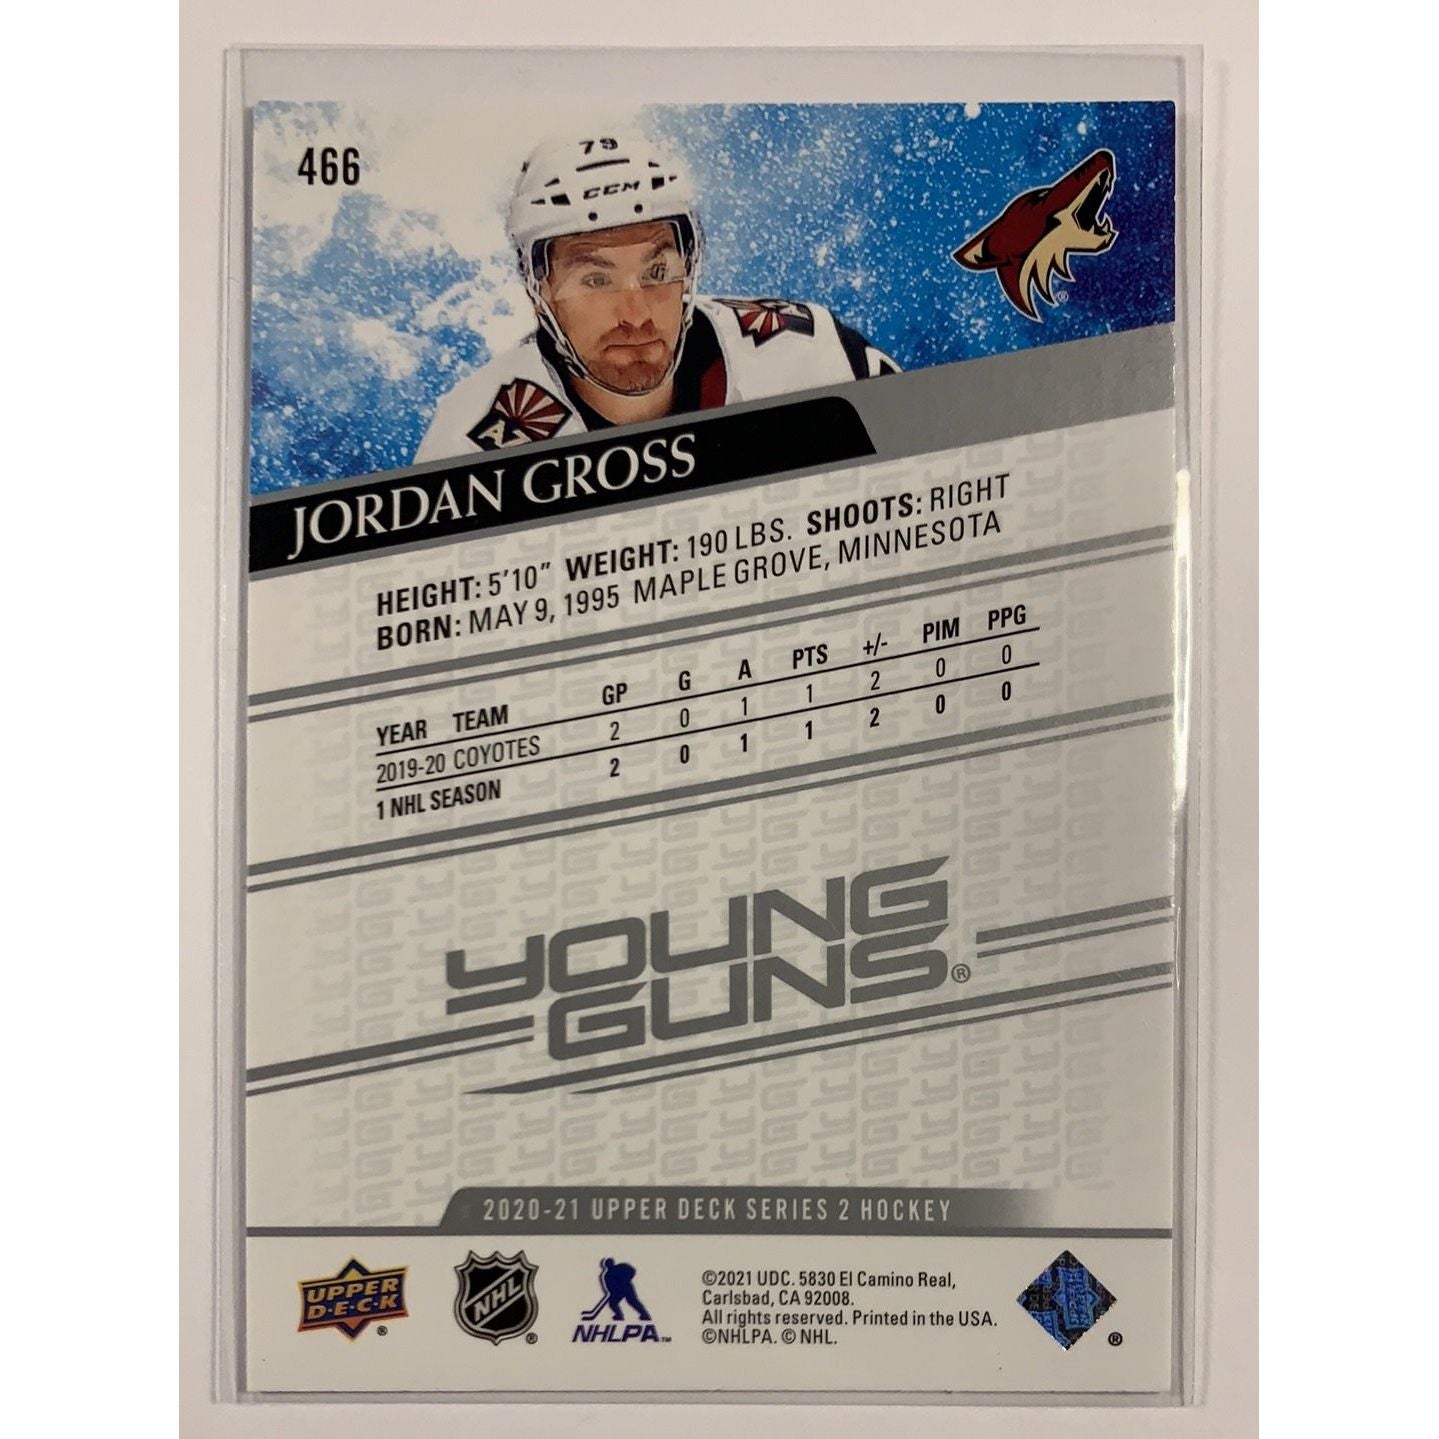  2020-21 Upper Deck Series 2 Jordan Gross Young Guns  Local Legends Cards & Collectibles